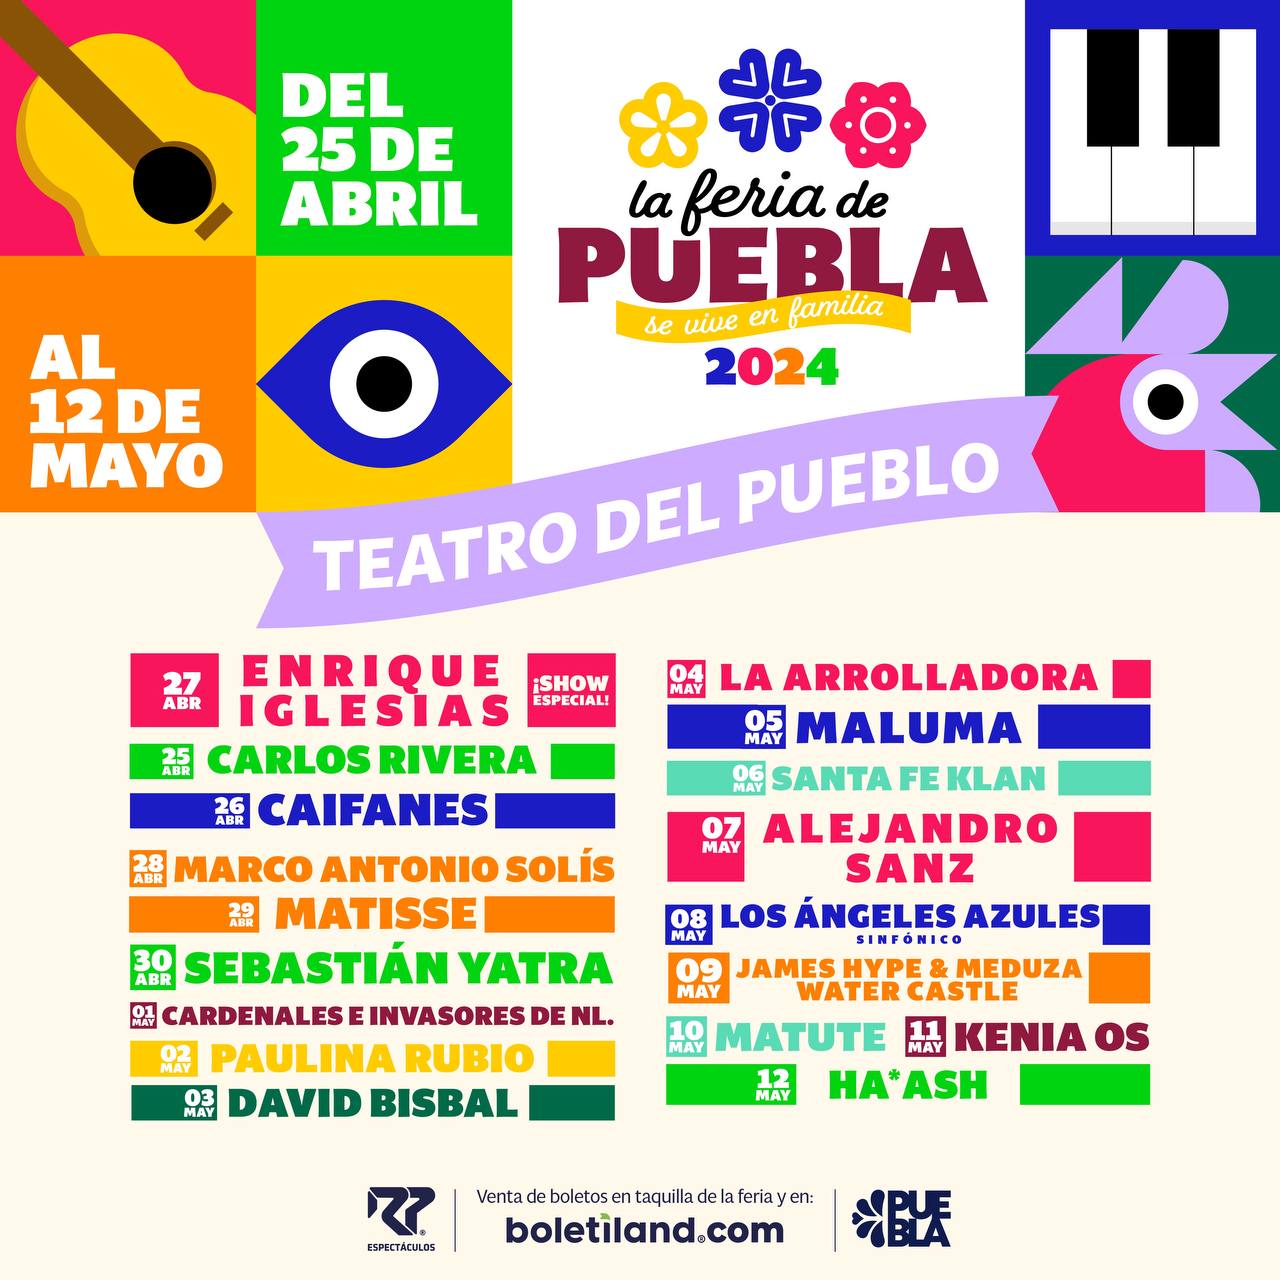 Teatro del Pueblo de la Feria de Puebla 2024